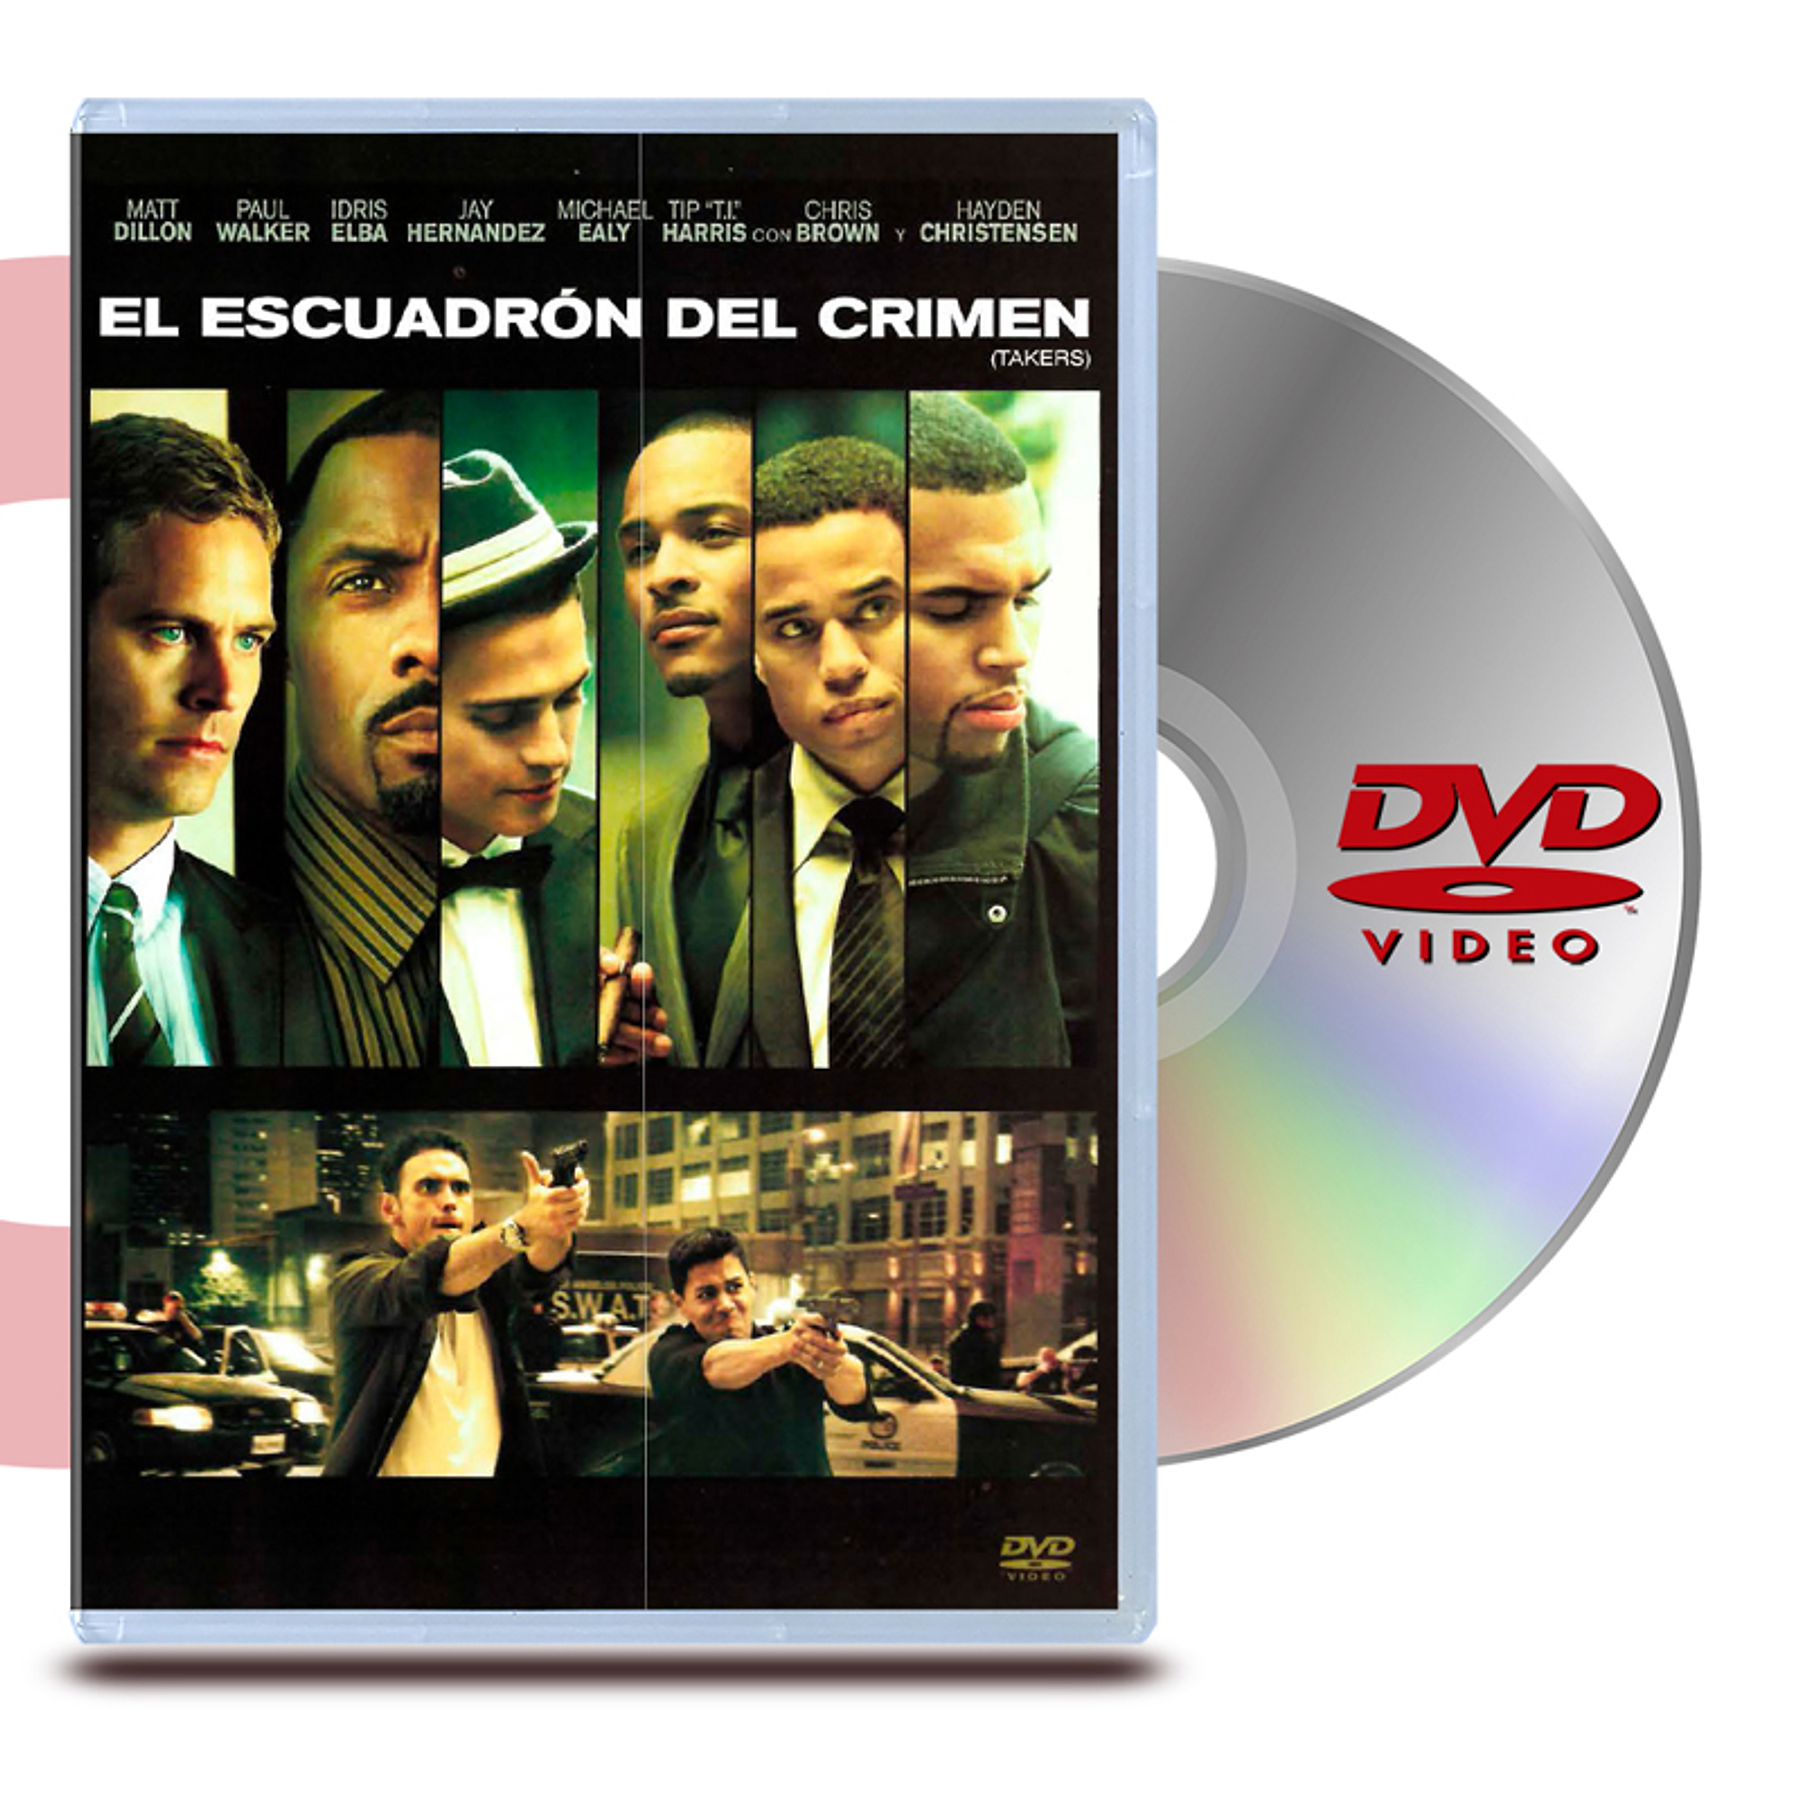 DVD EL ESCUADRÓN DEL CRÍMEN